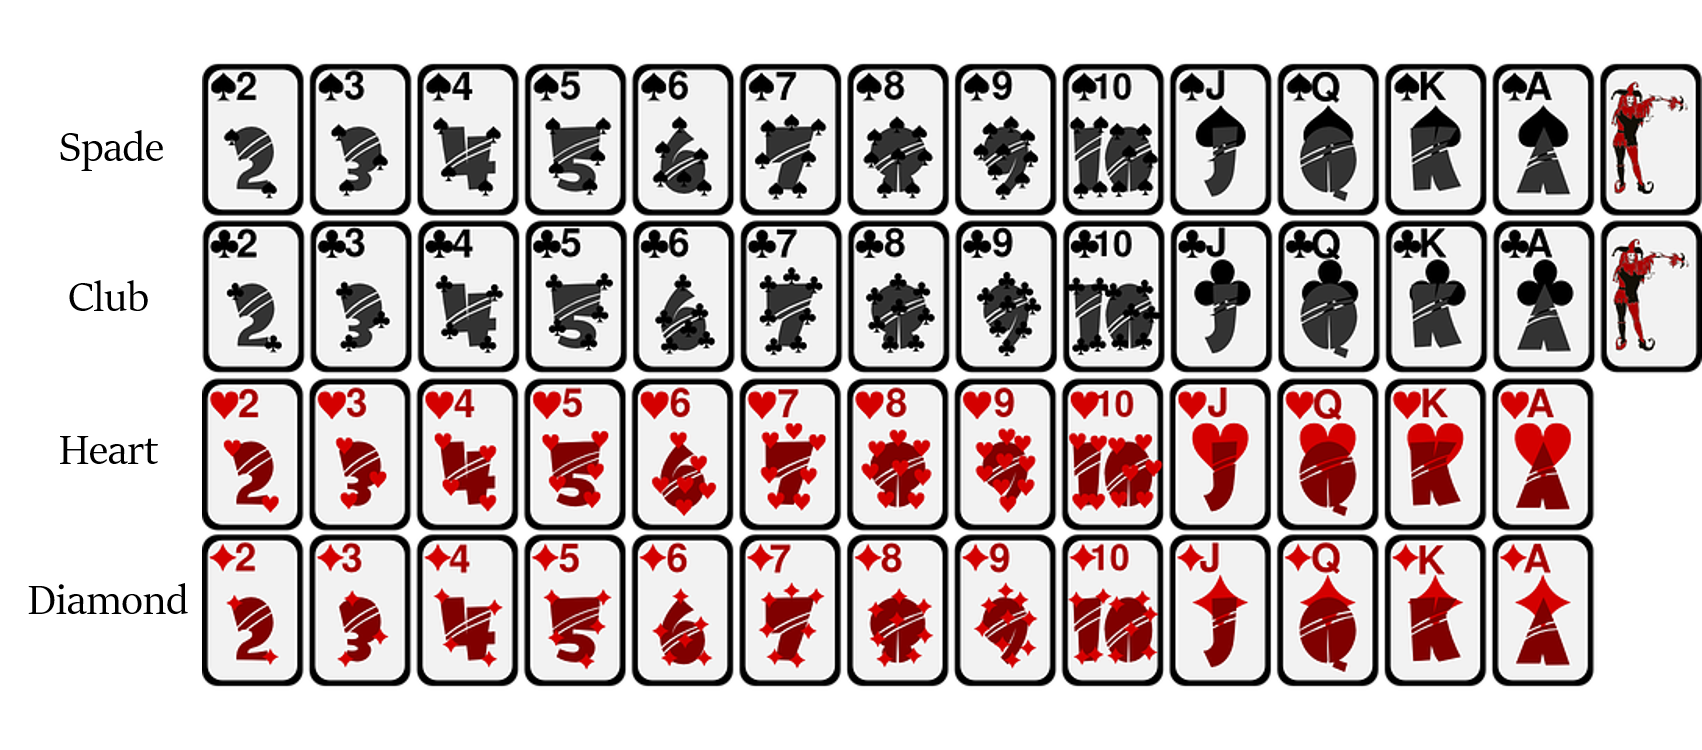 Черные карты распечатать. Покер колода 52 карты. Колода в 52 карты в холдеме. Распечатка игровых карт. Игровые карты для распечатки.